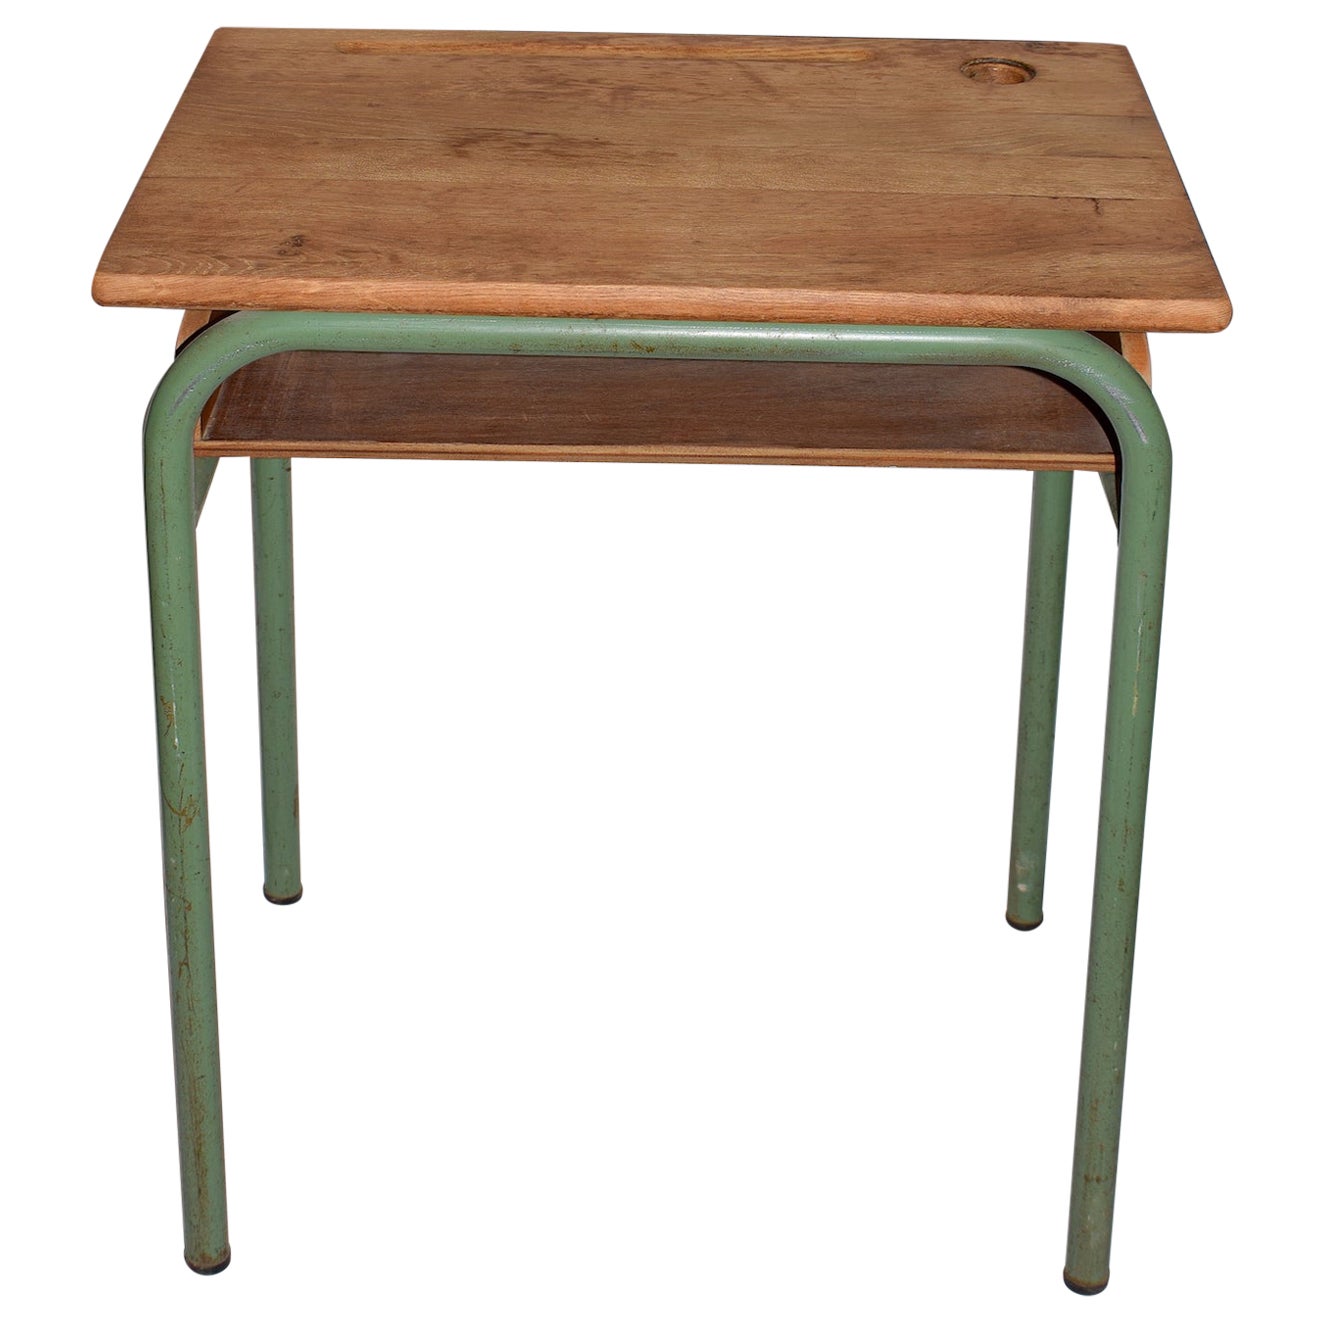 Mid-Century Tubular Metal and Wooden Top School Desk, Industrial in Design